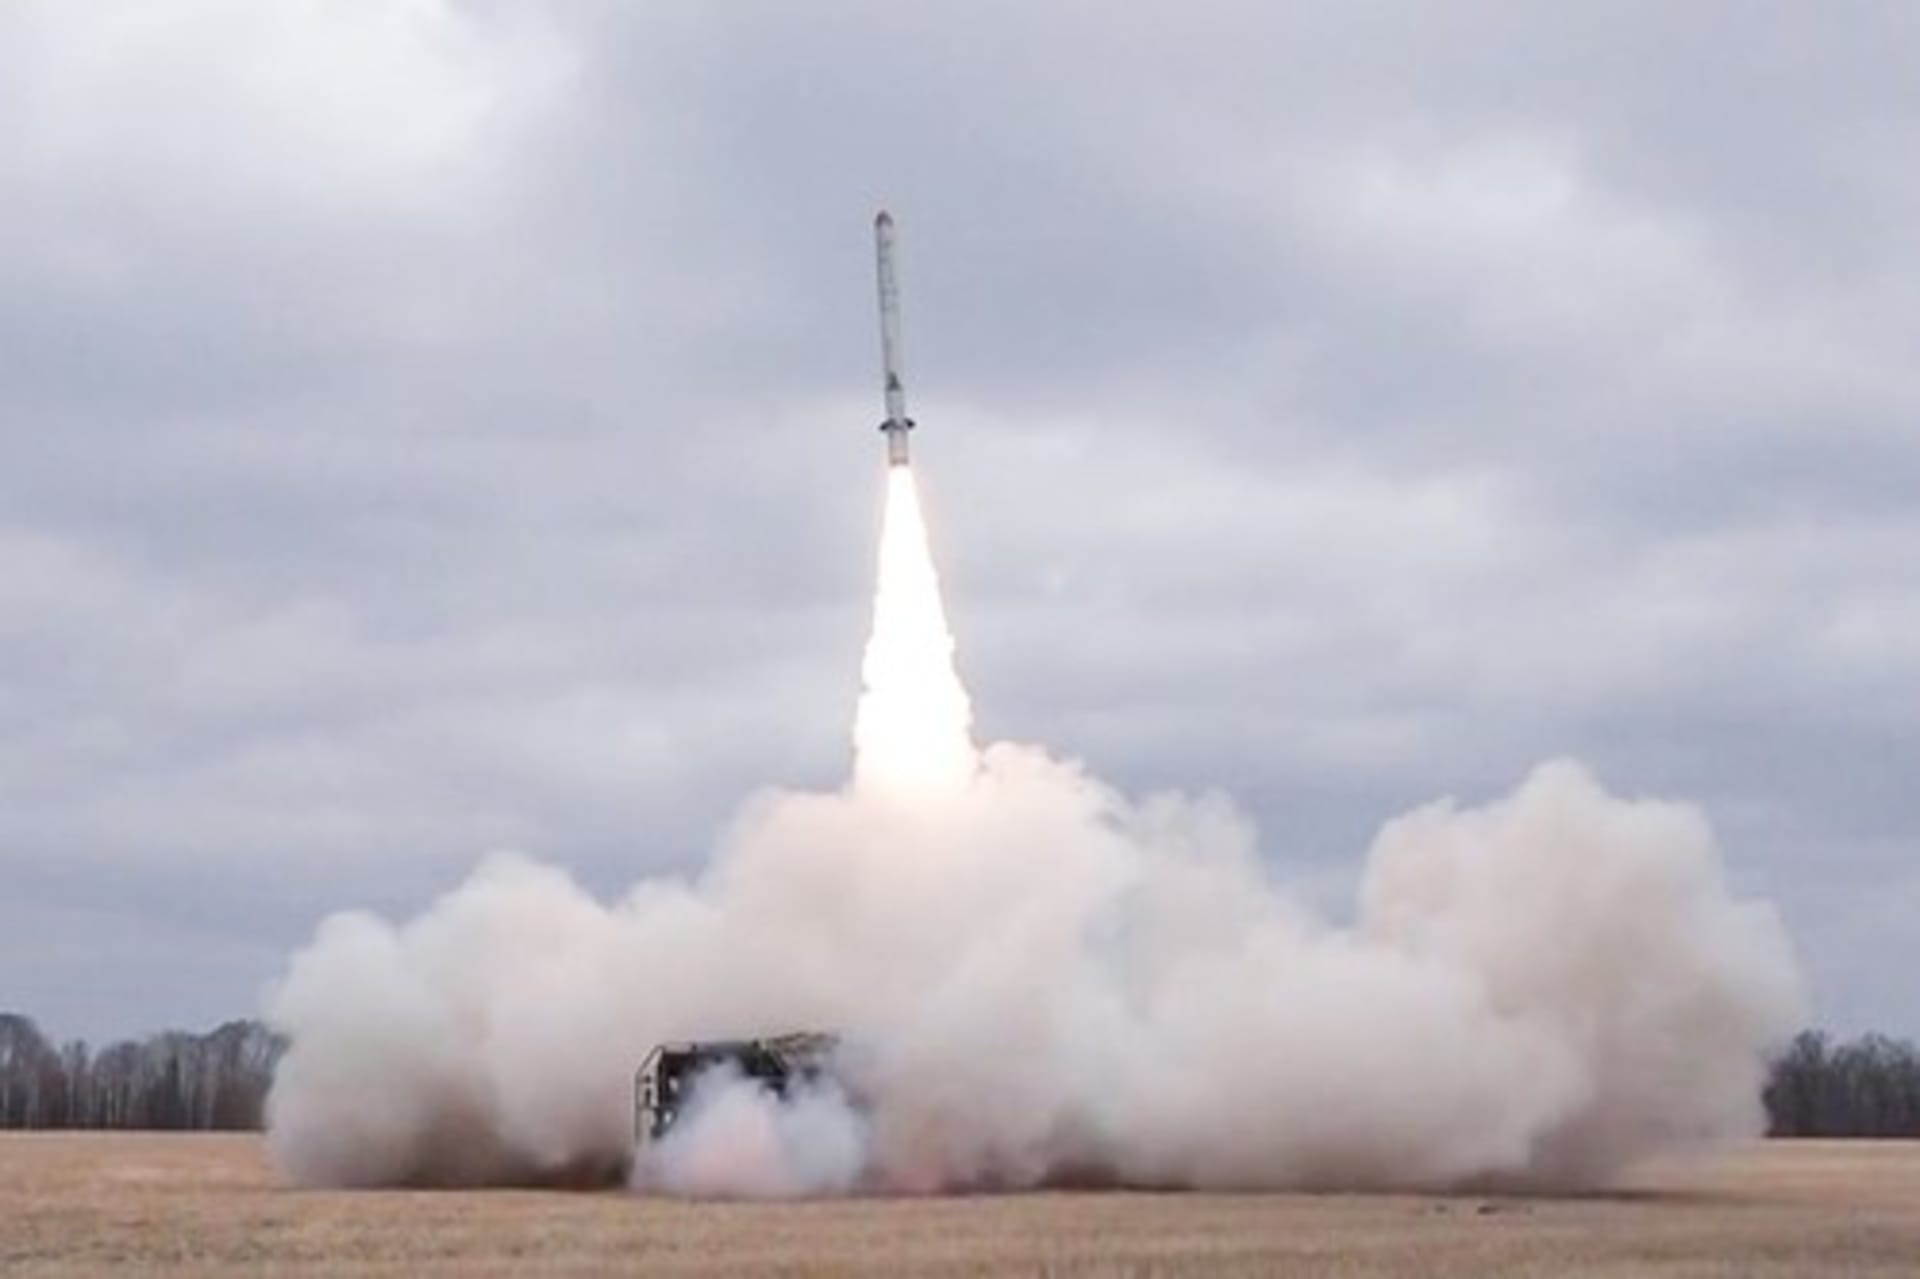  Ruský mobilní taktický raketový systém 9K720 Iskander pálící na ukrajinské pozice